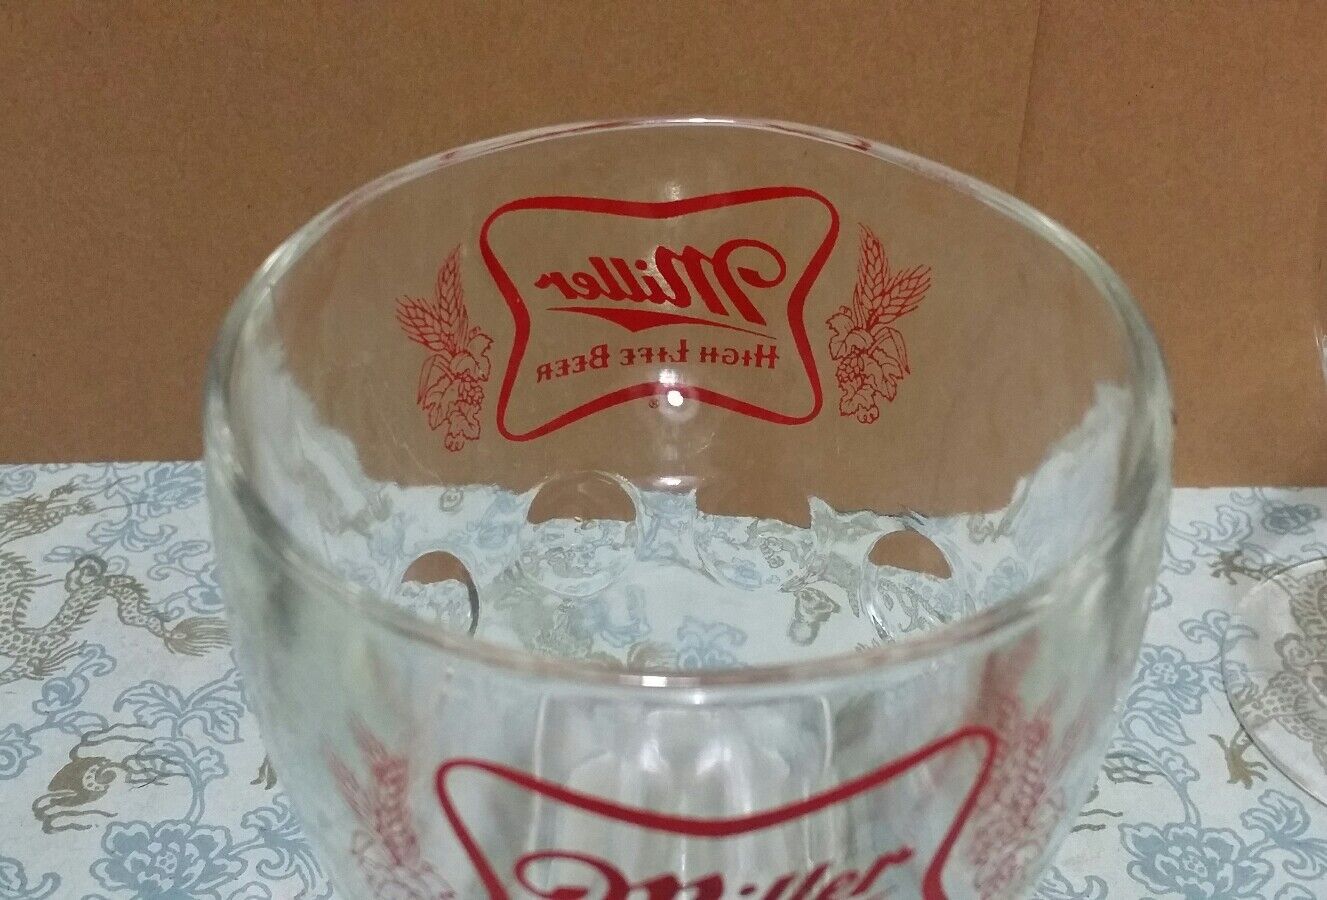 4 Vintage Miller High Life Beer Goblet Glasses Stemmed Chalice Summer Home Bar Miller - фотография #8